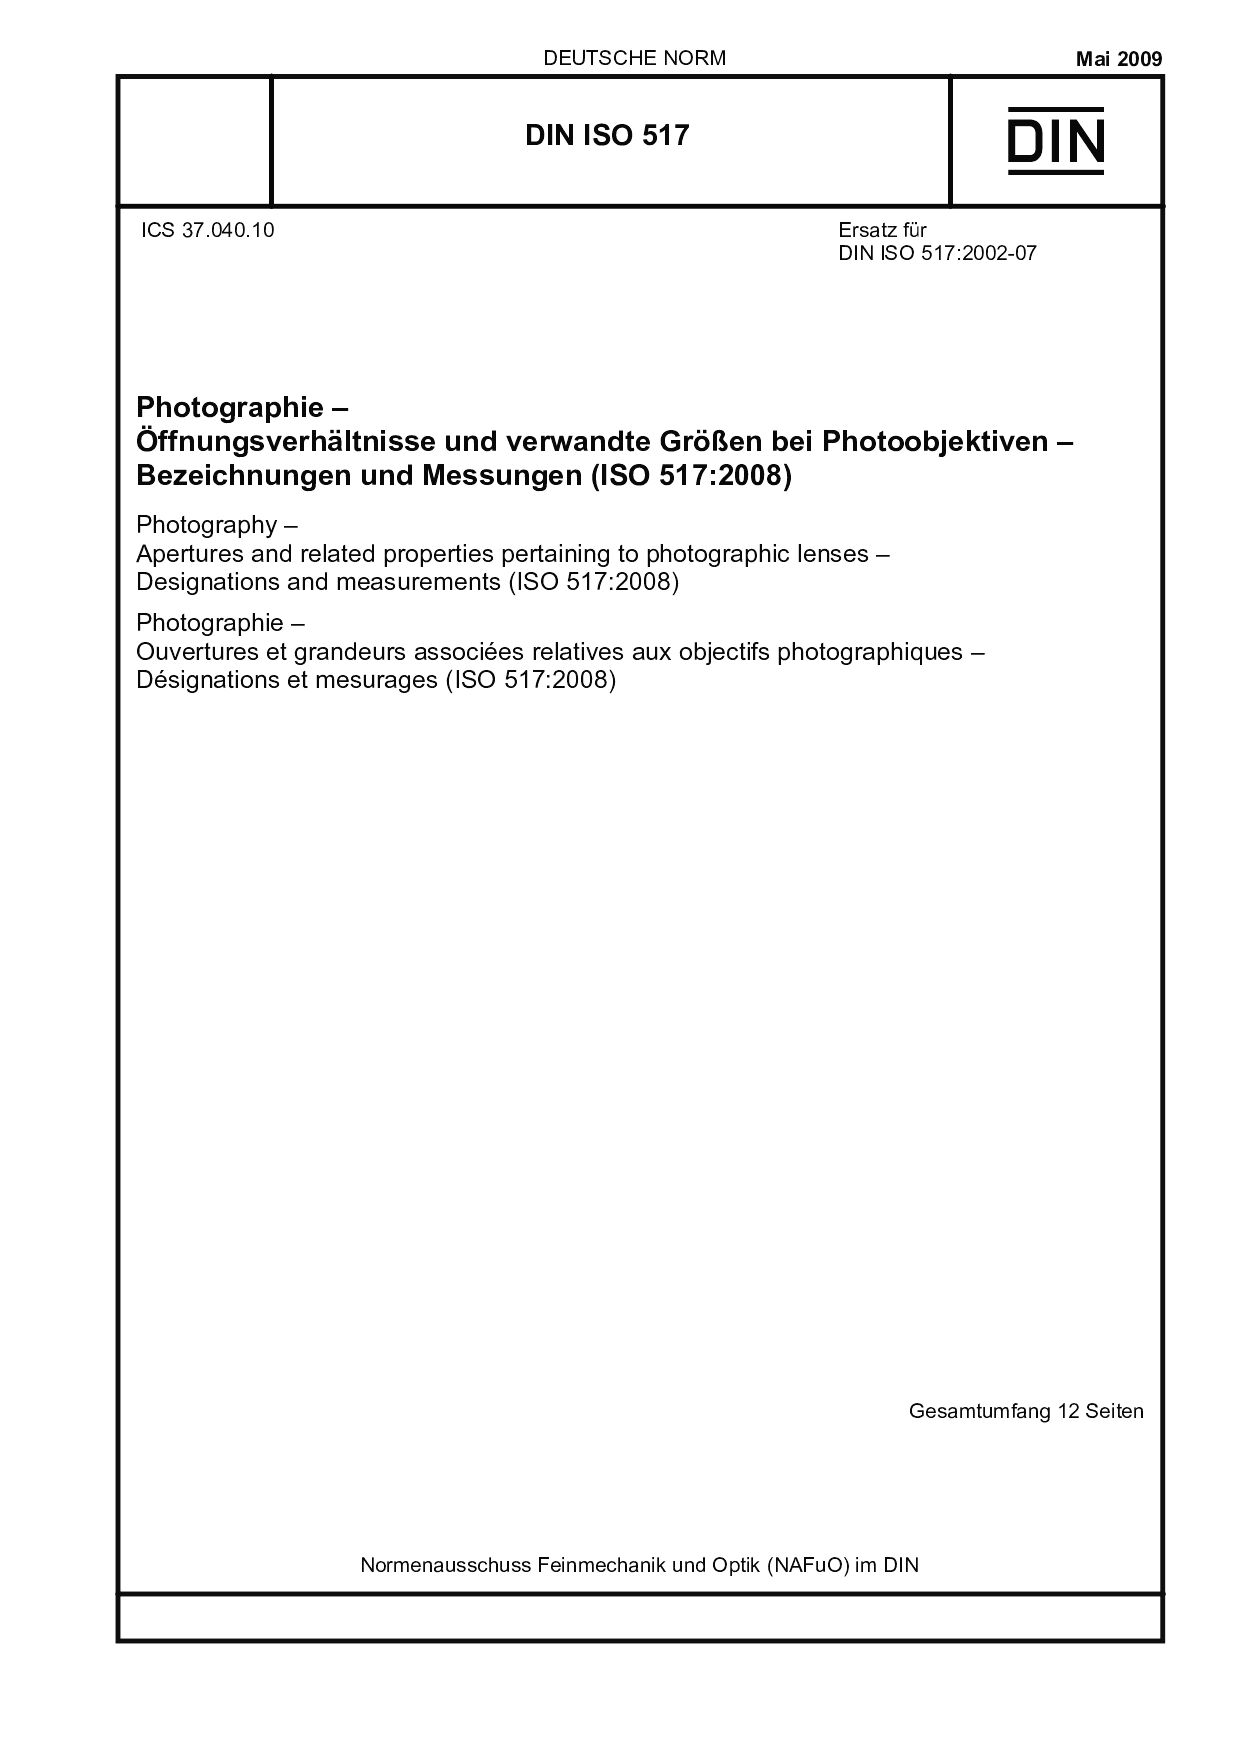 DIN ISO 517:2009封面图